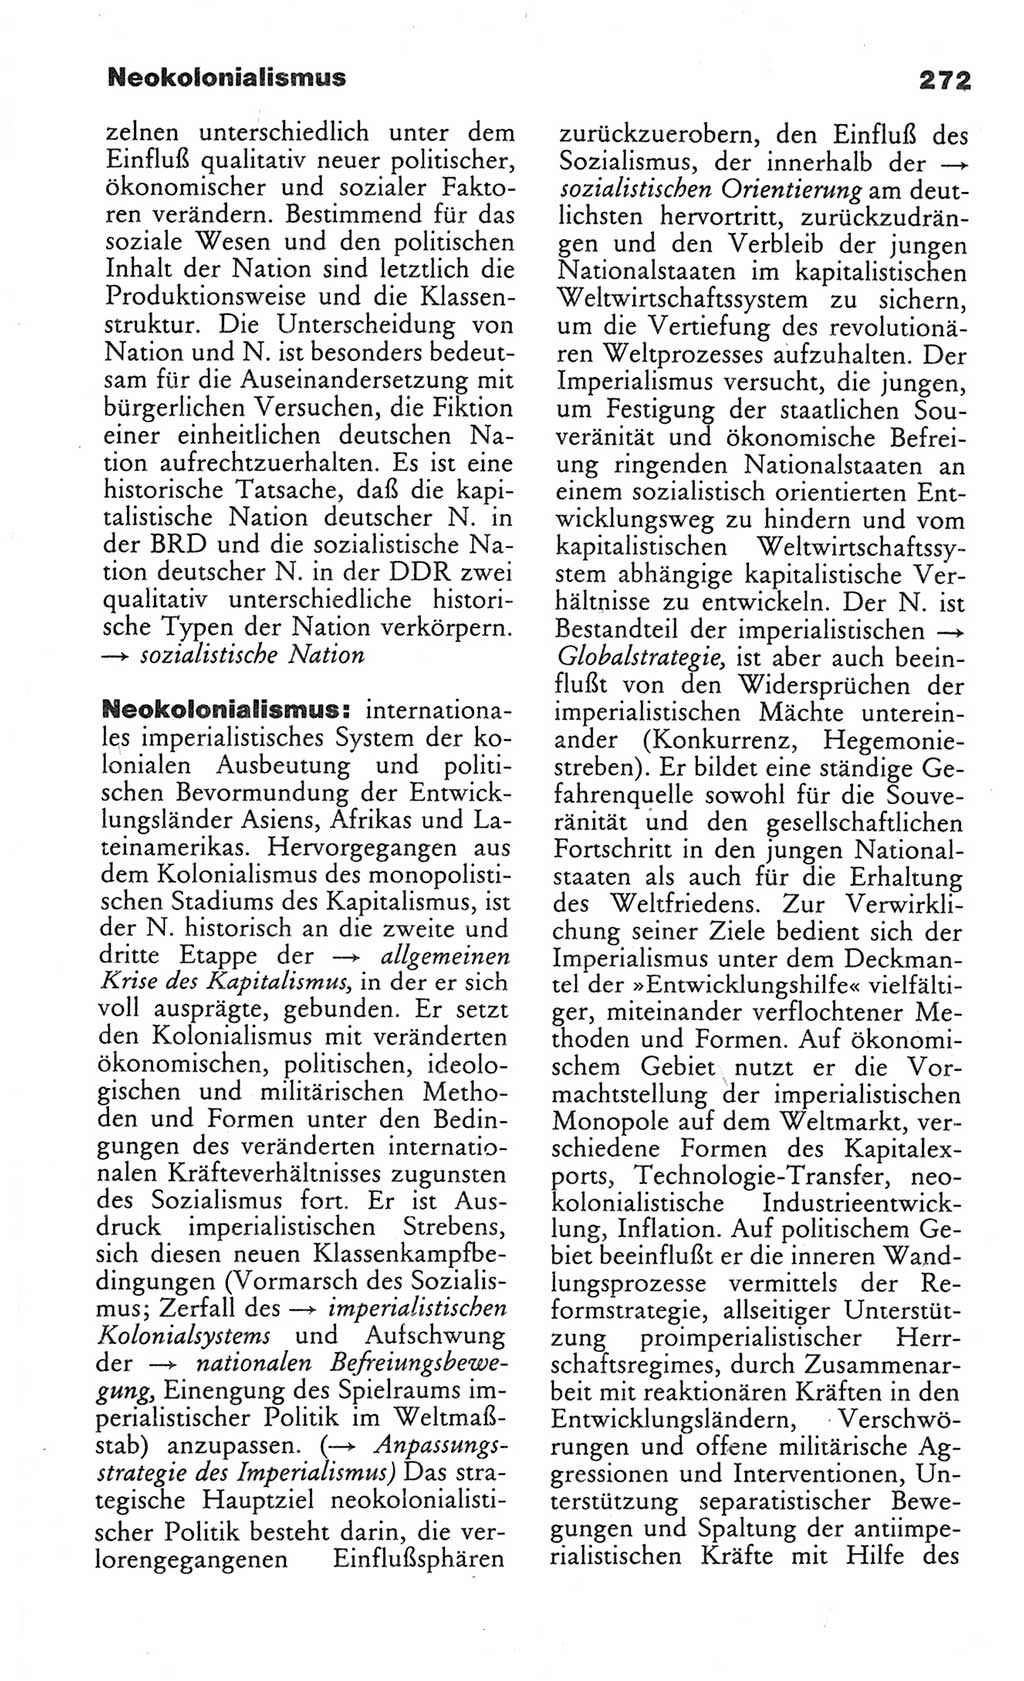 Wörterbuch des wissenschaftlichen Kommunismus [Deutsche Demokratische Republik (DDR)] 1984, Seite 272 (Wb. wiss. Komm. DDR 1984, S. 272)